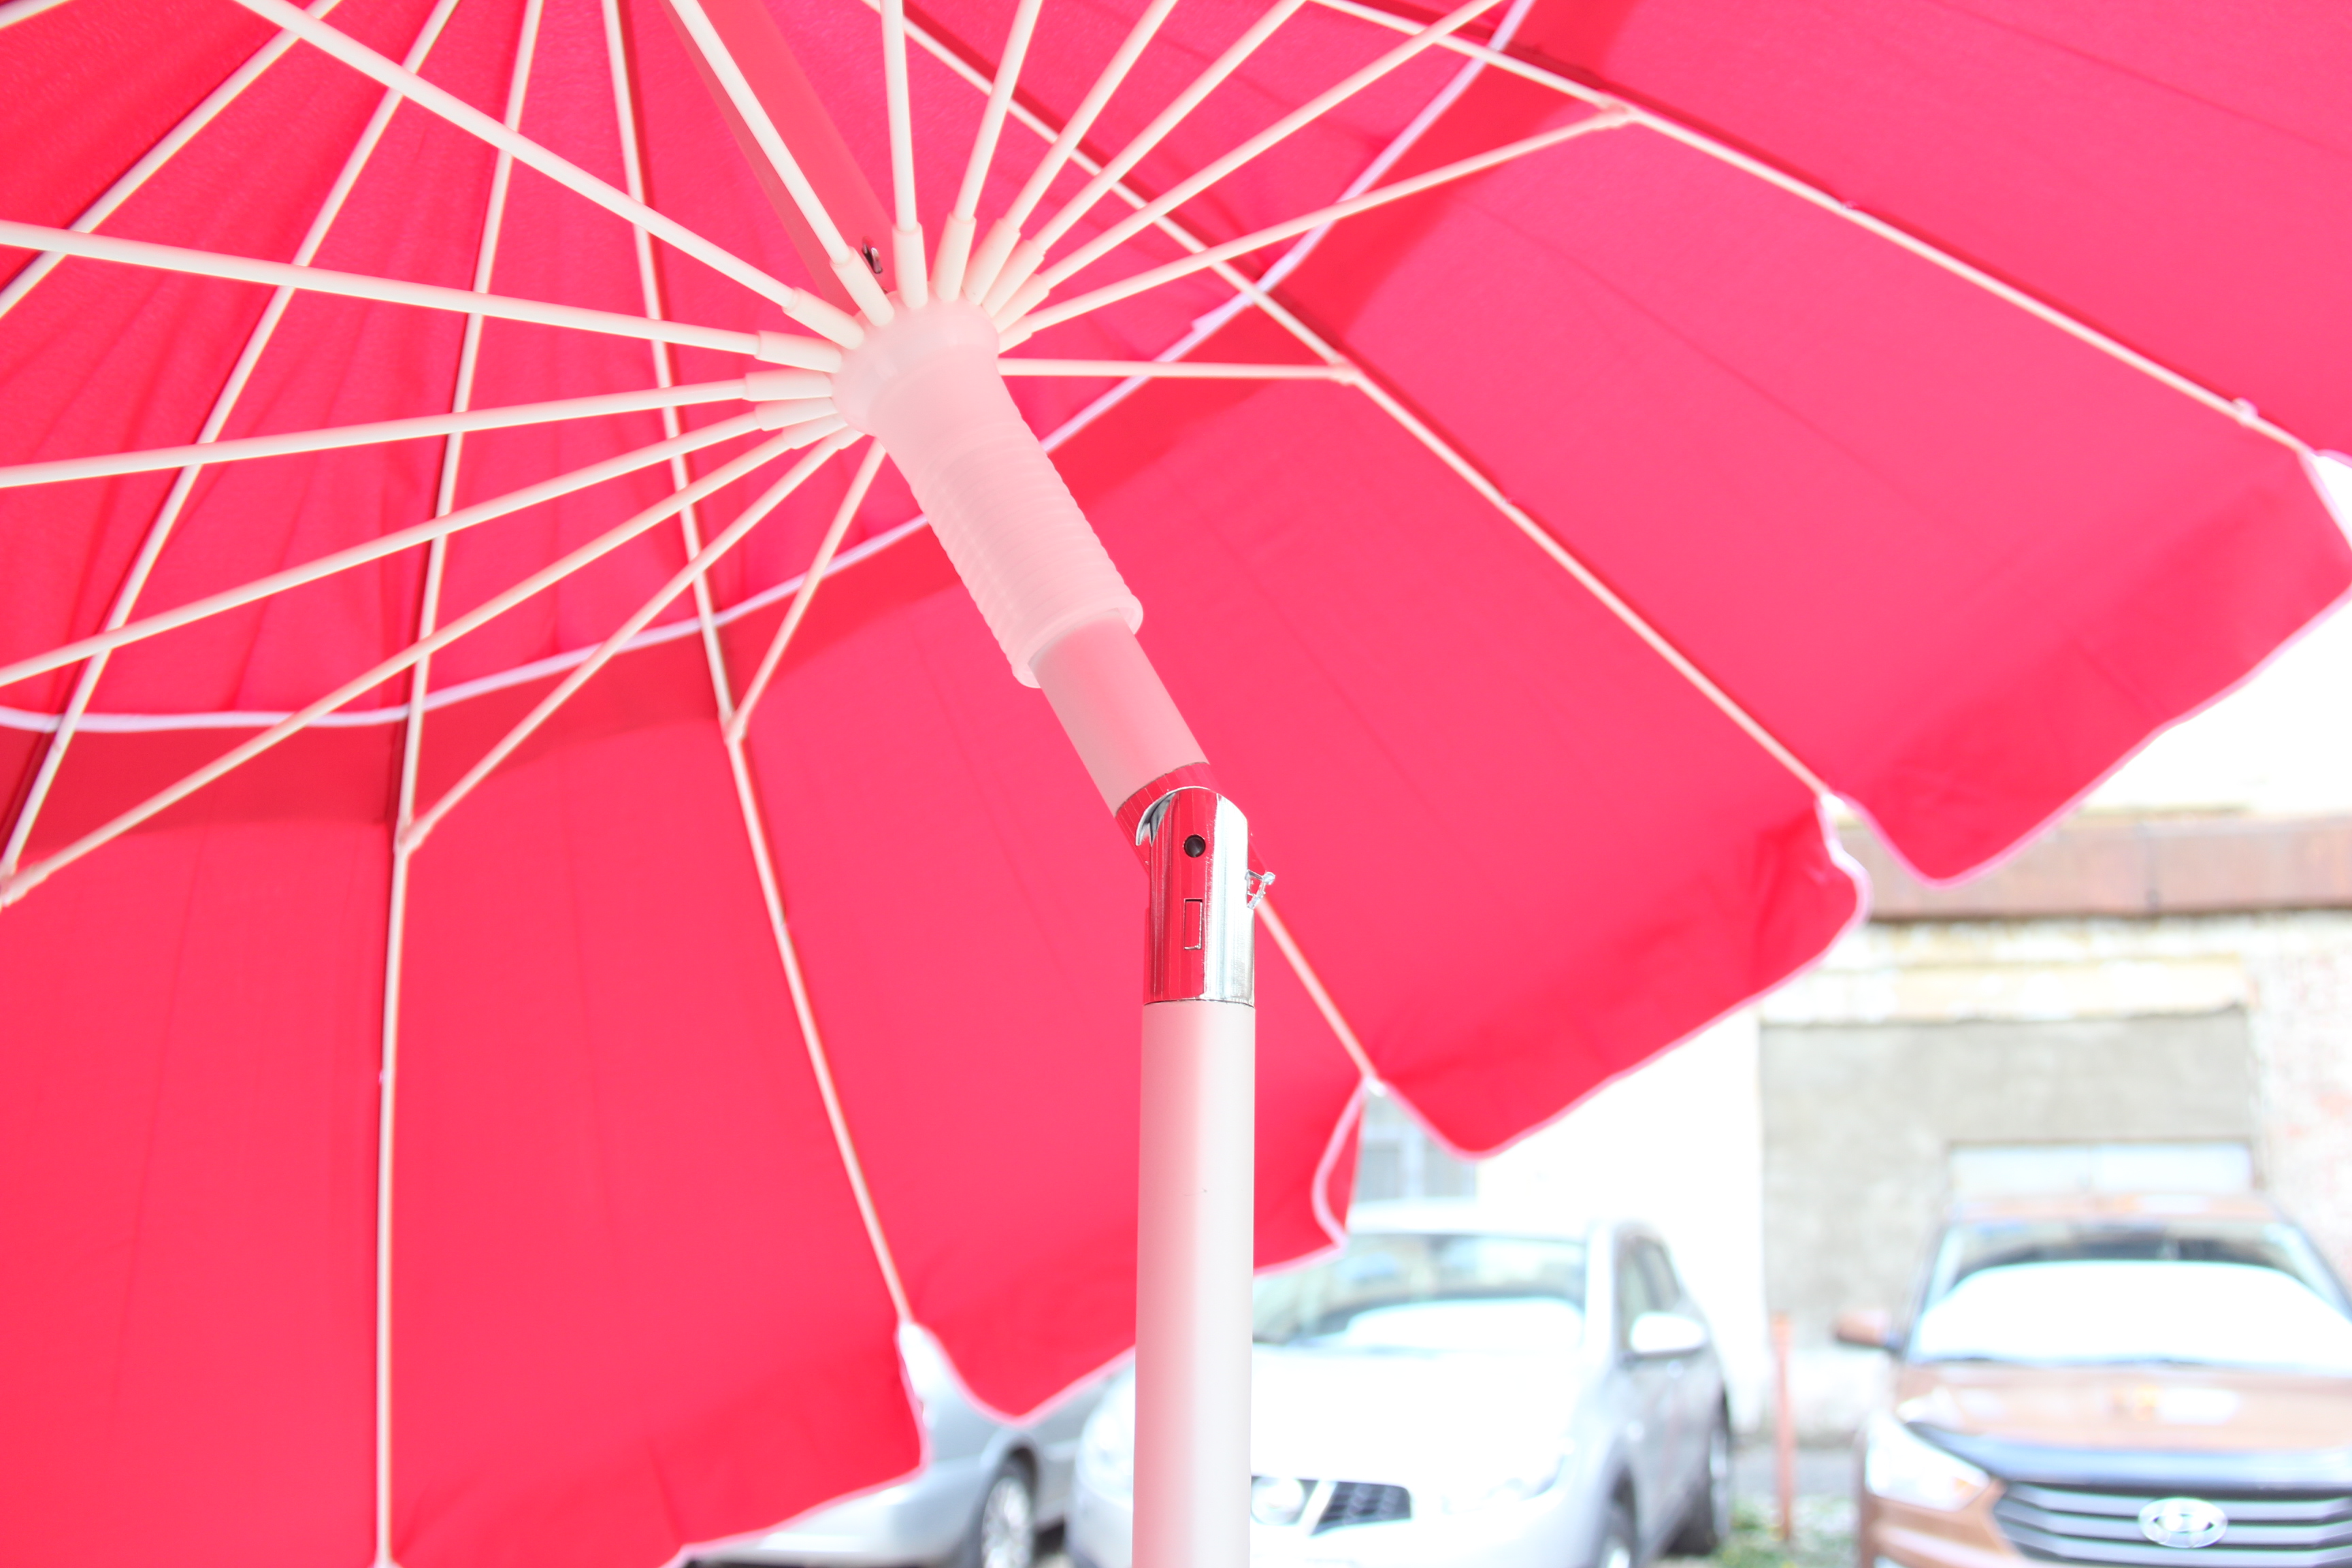 Ремонт зонтов в самаре. Зонт пляжный, 210×210×225 см. Sd203-130cm зонт. Gea 87071 зонт. Пляжный зонт.